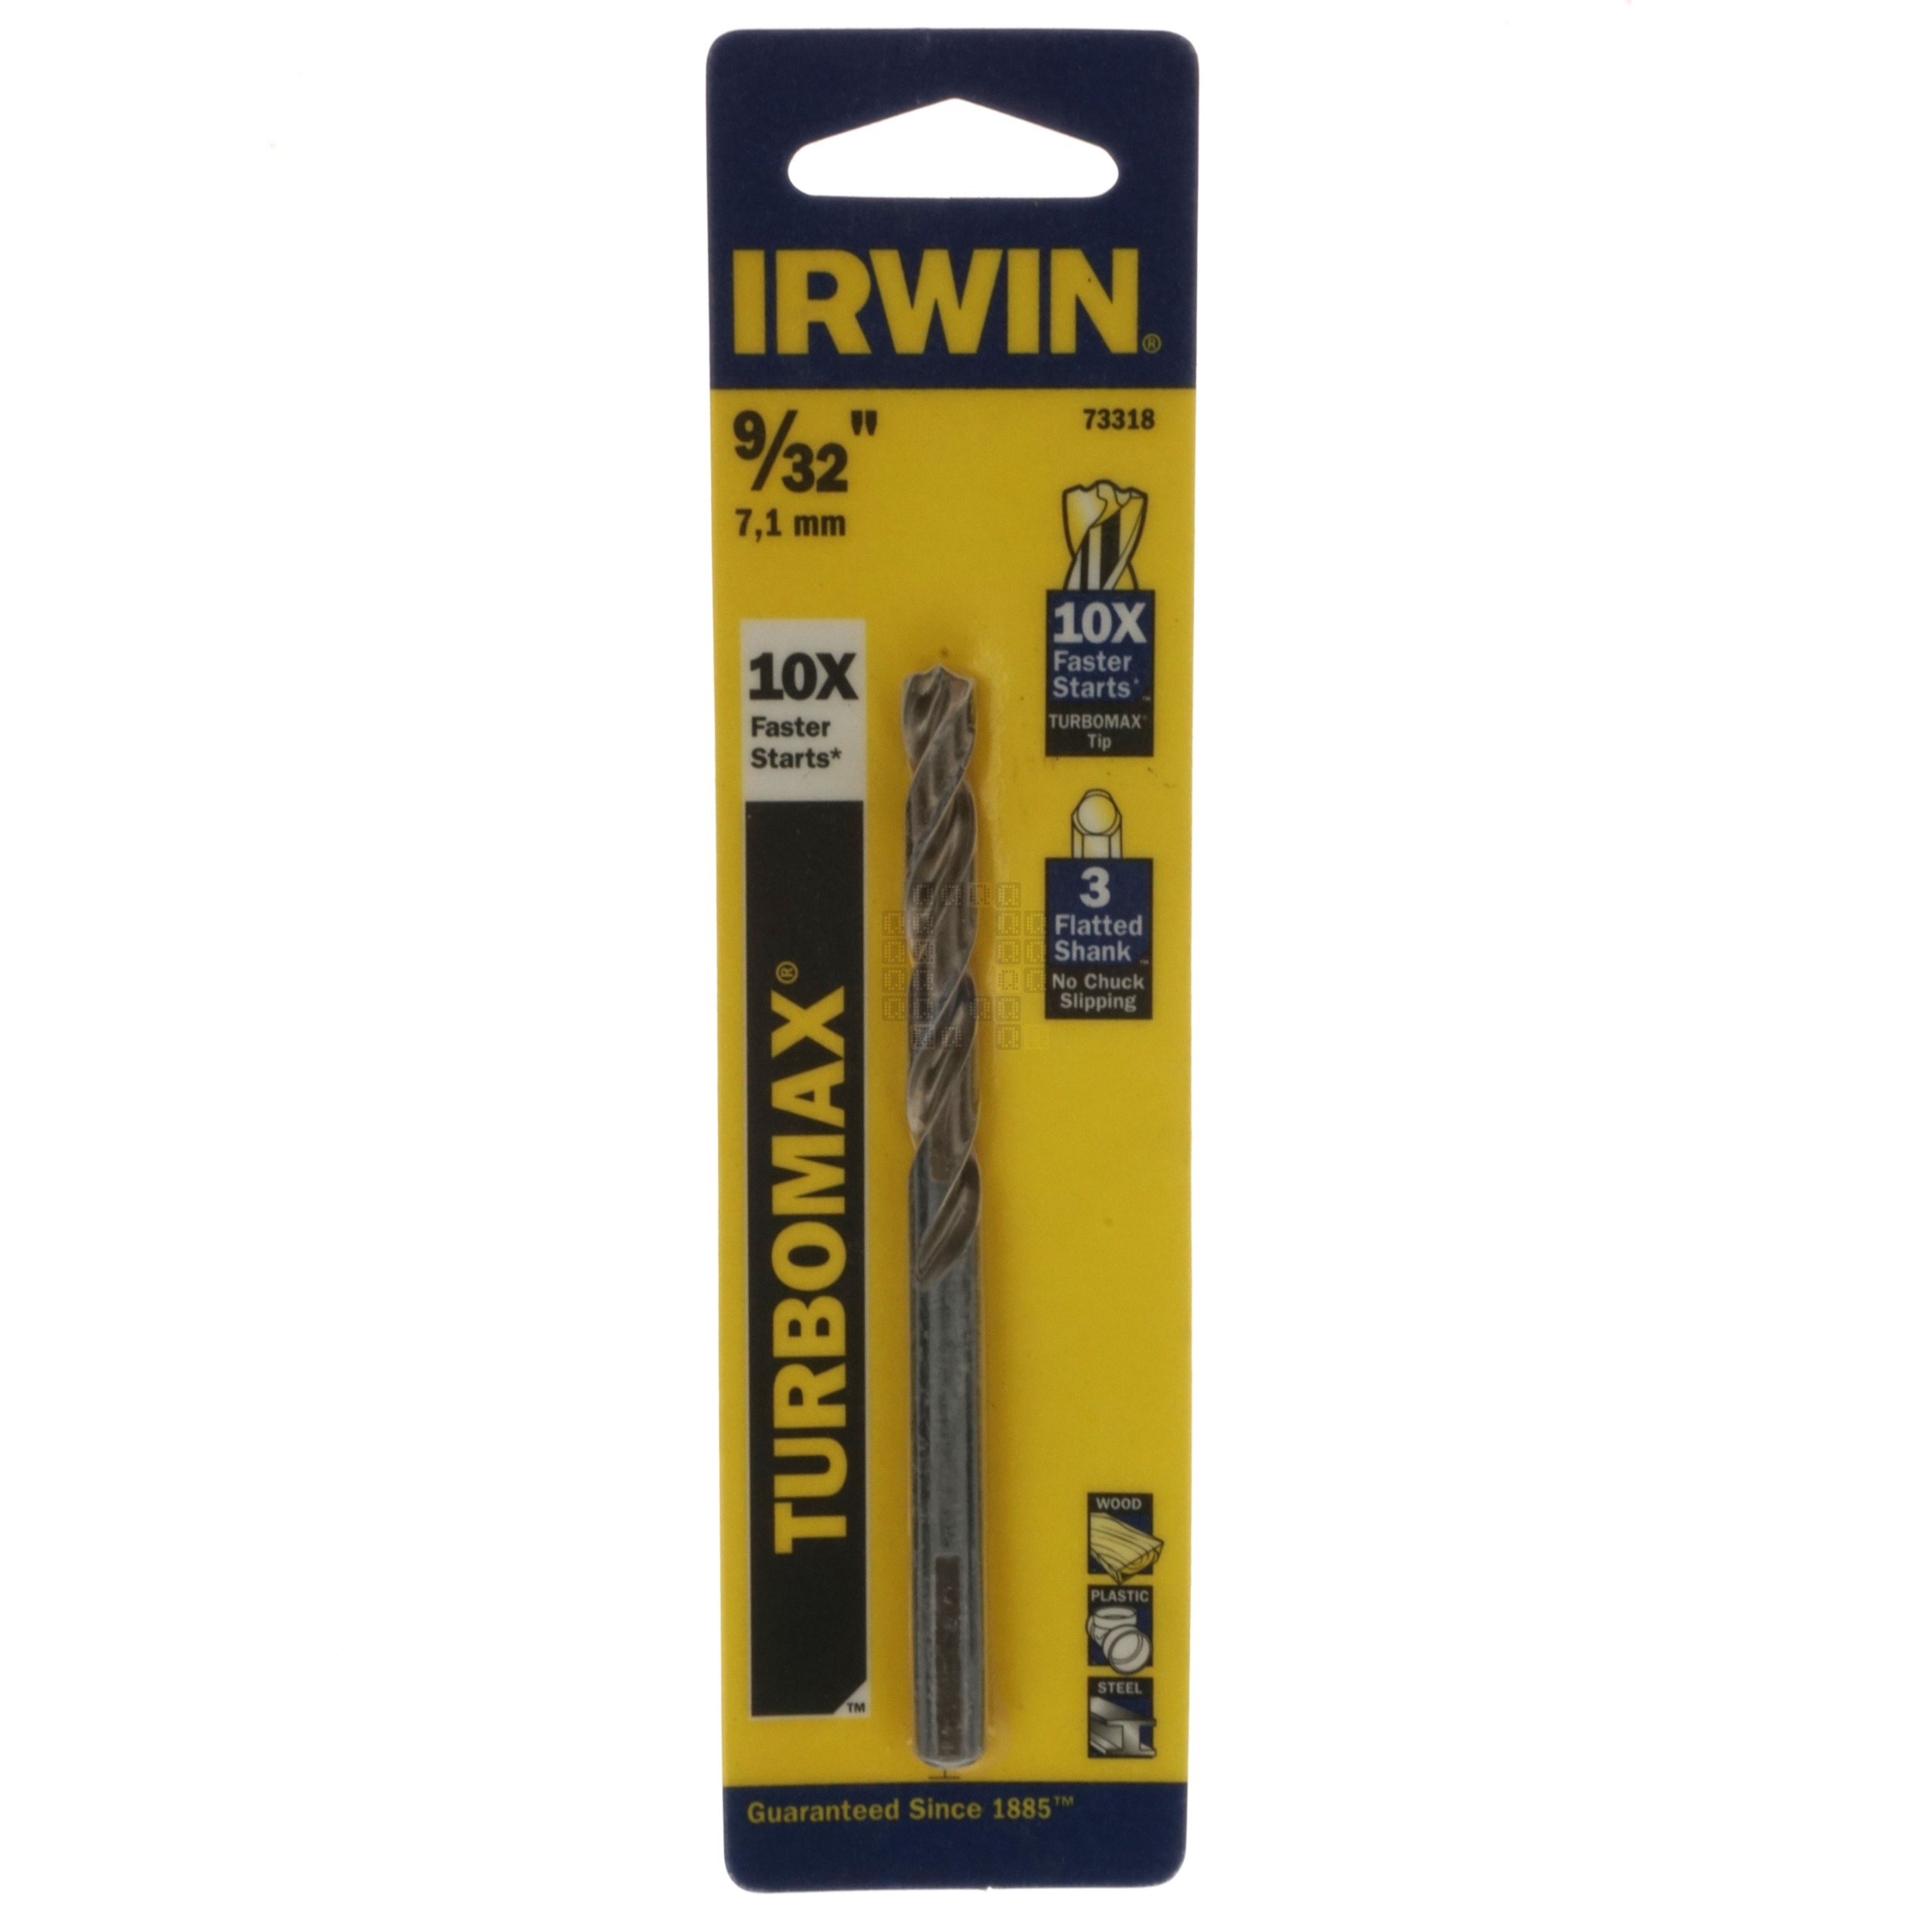 Irwin Industrial Tools 73318 Turbomax 9/32" Drill Bit